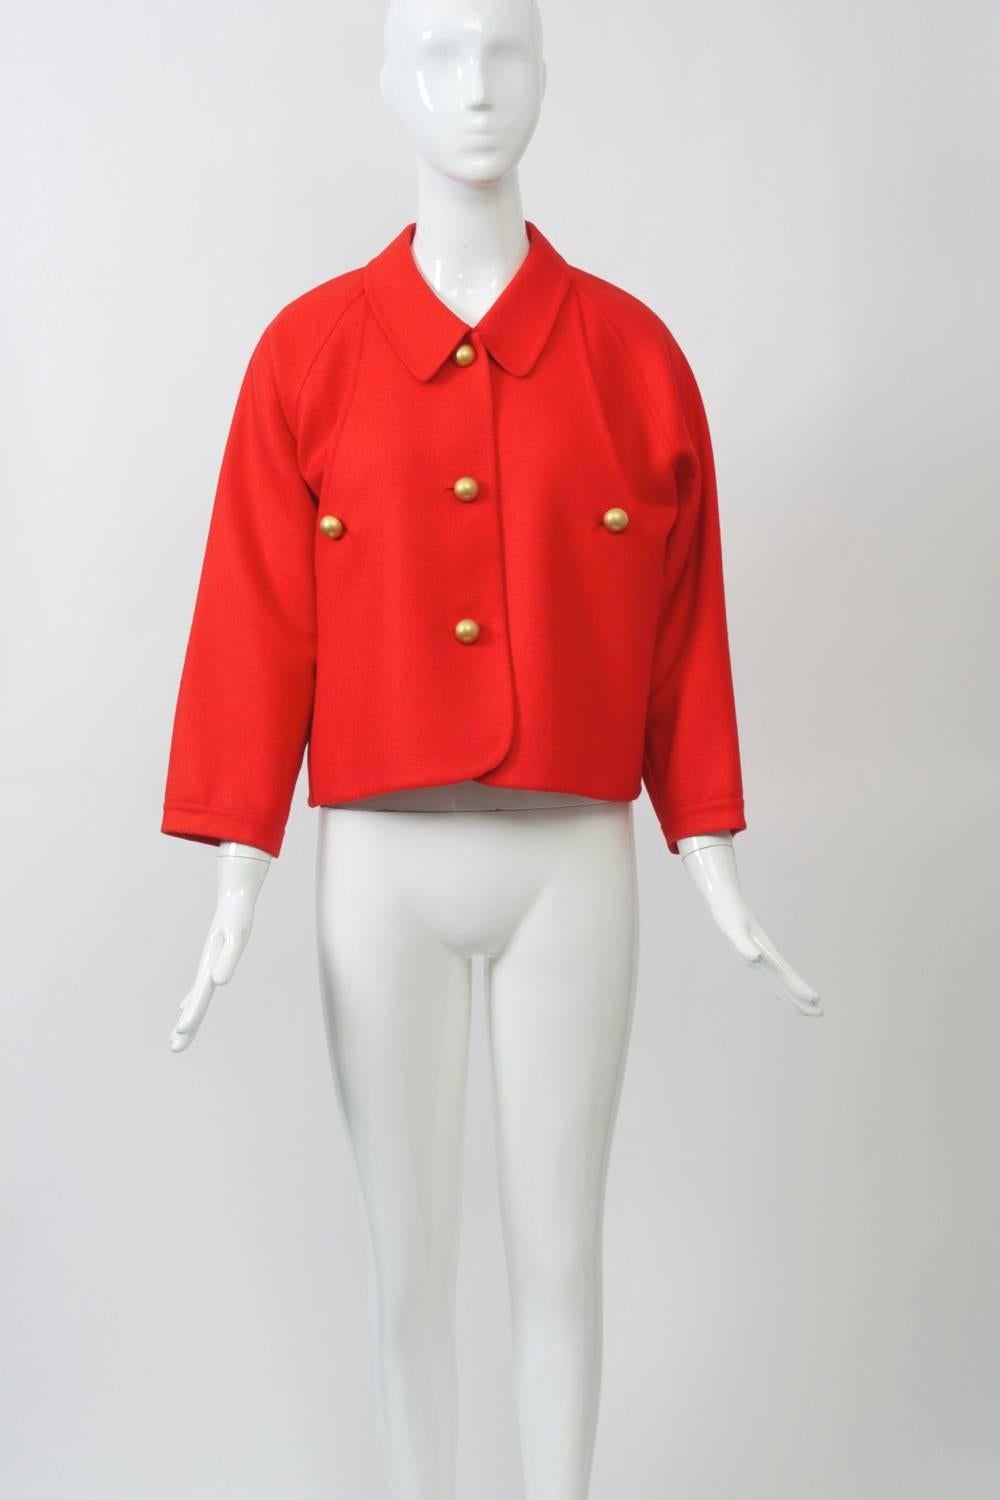 Red Geoffrey Beene Wool Jacket